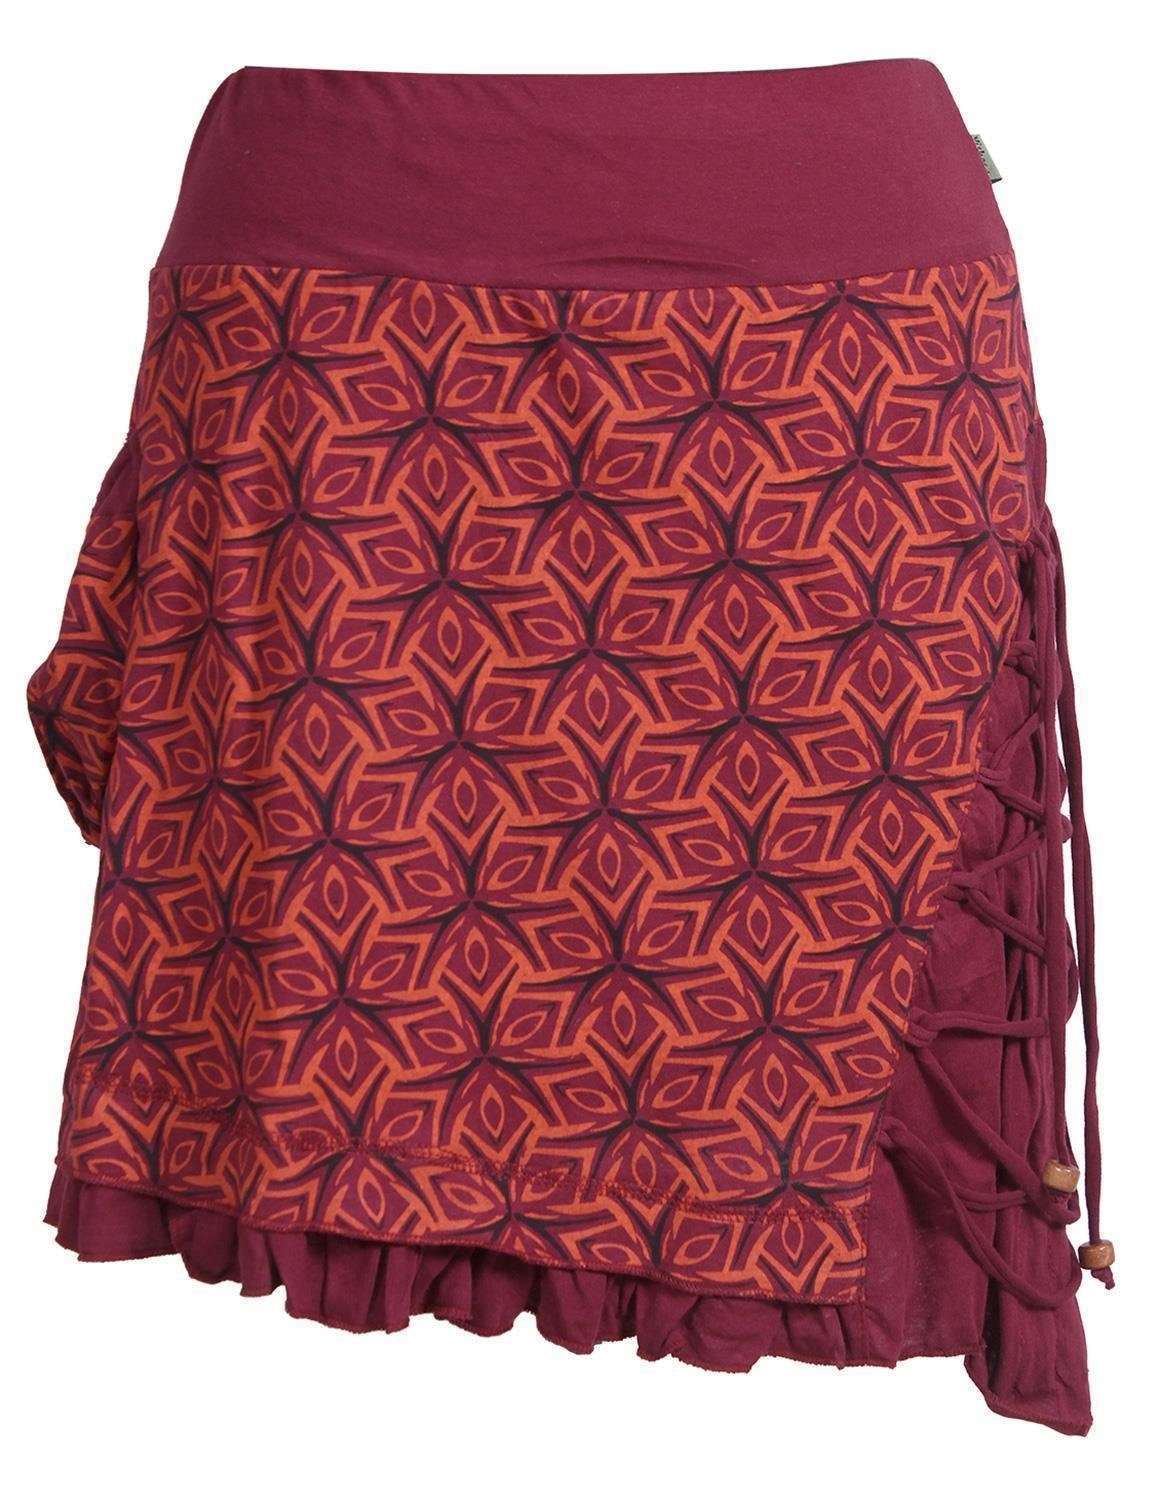 Остроконечная юбка Короткая асимметричная юбка для накидки Фестивальный стиль бохо Гоа в стиле хип